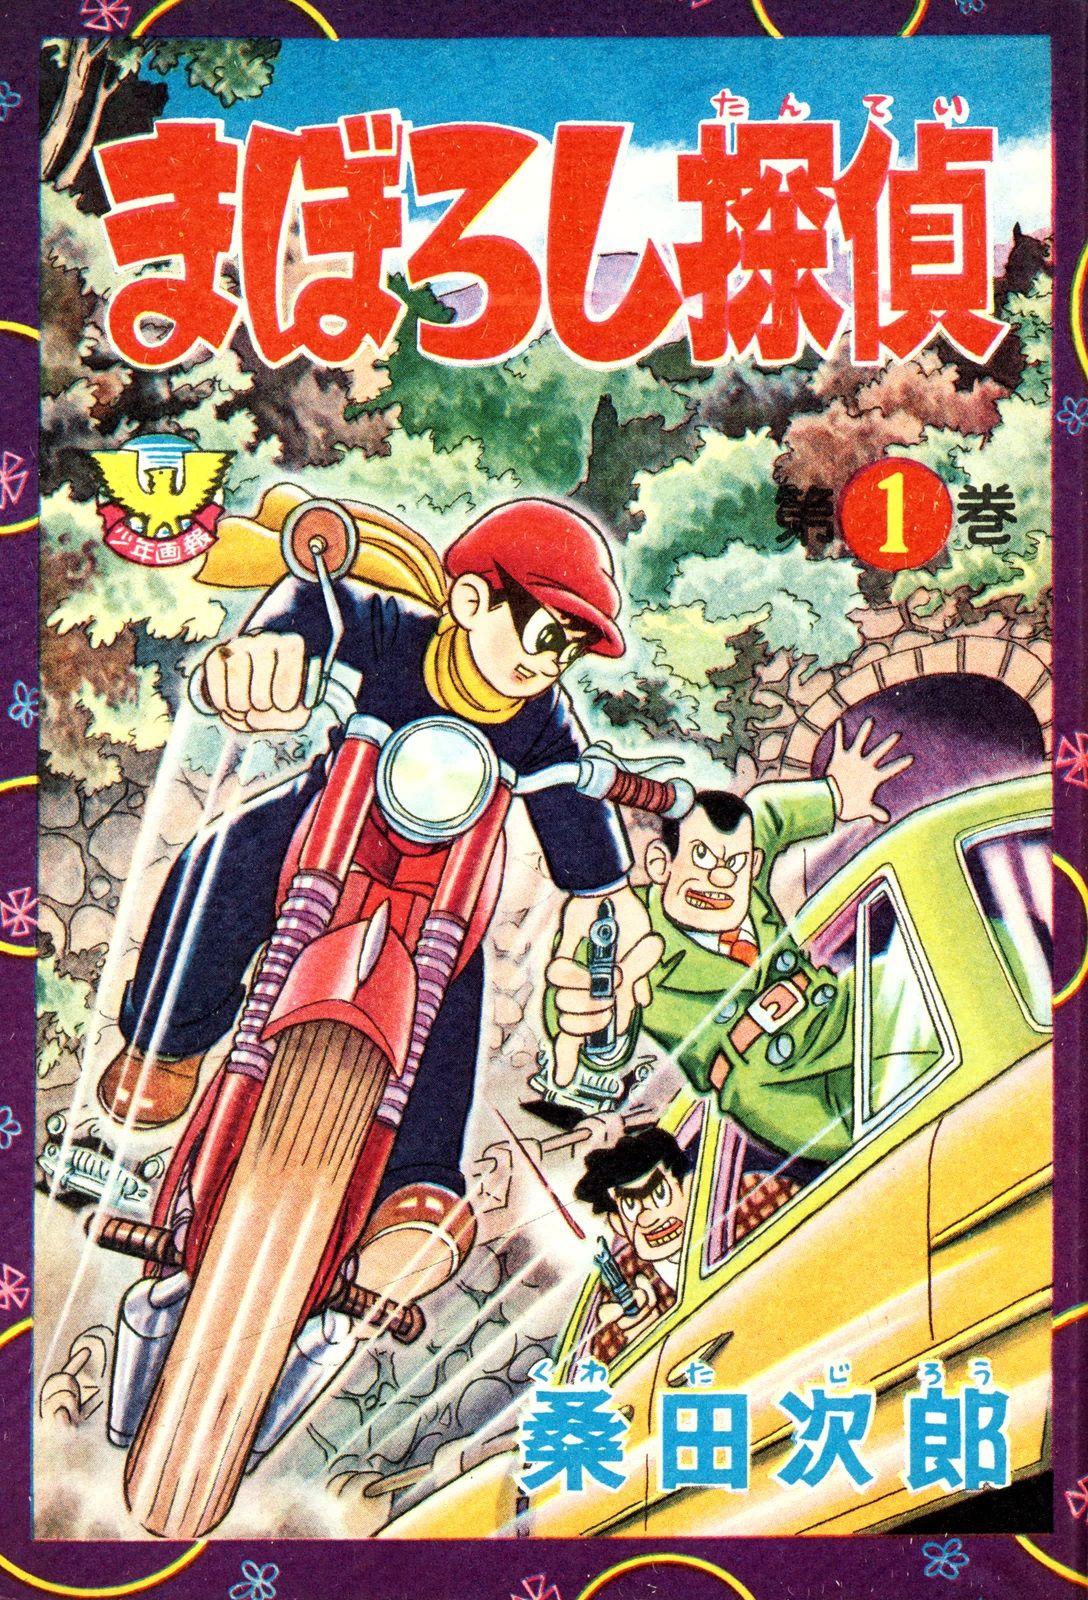 □附録漫画『まぼろし探偵』桑田次郎・画。２冊一括。雑誌「少年画報 